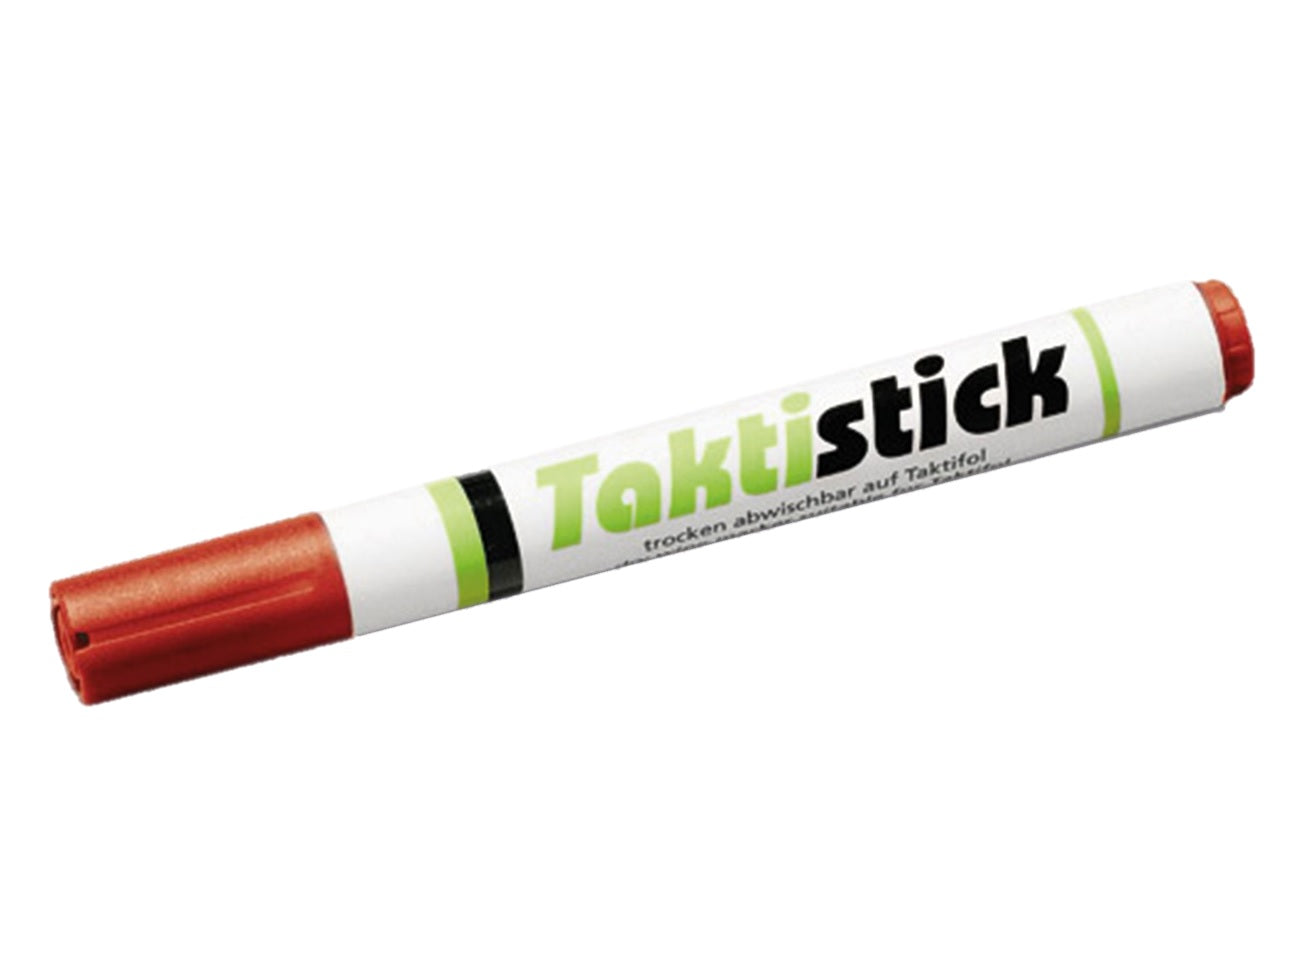 Taktistick Marker für Taktiktafel und Coachboard schwarz, rot, grün